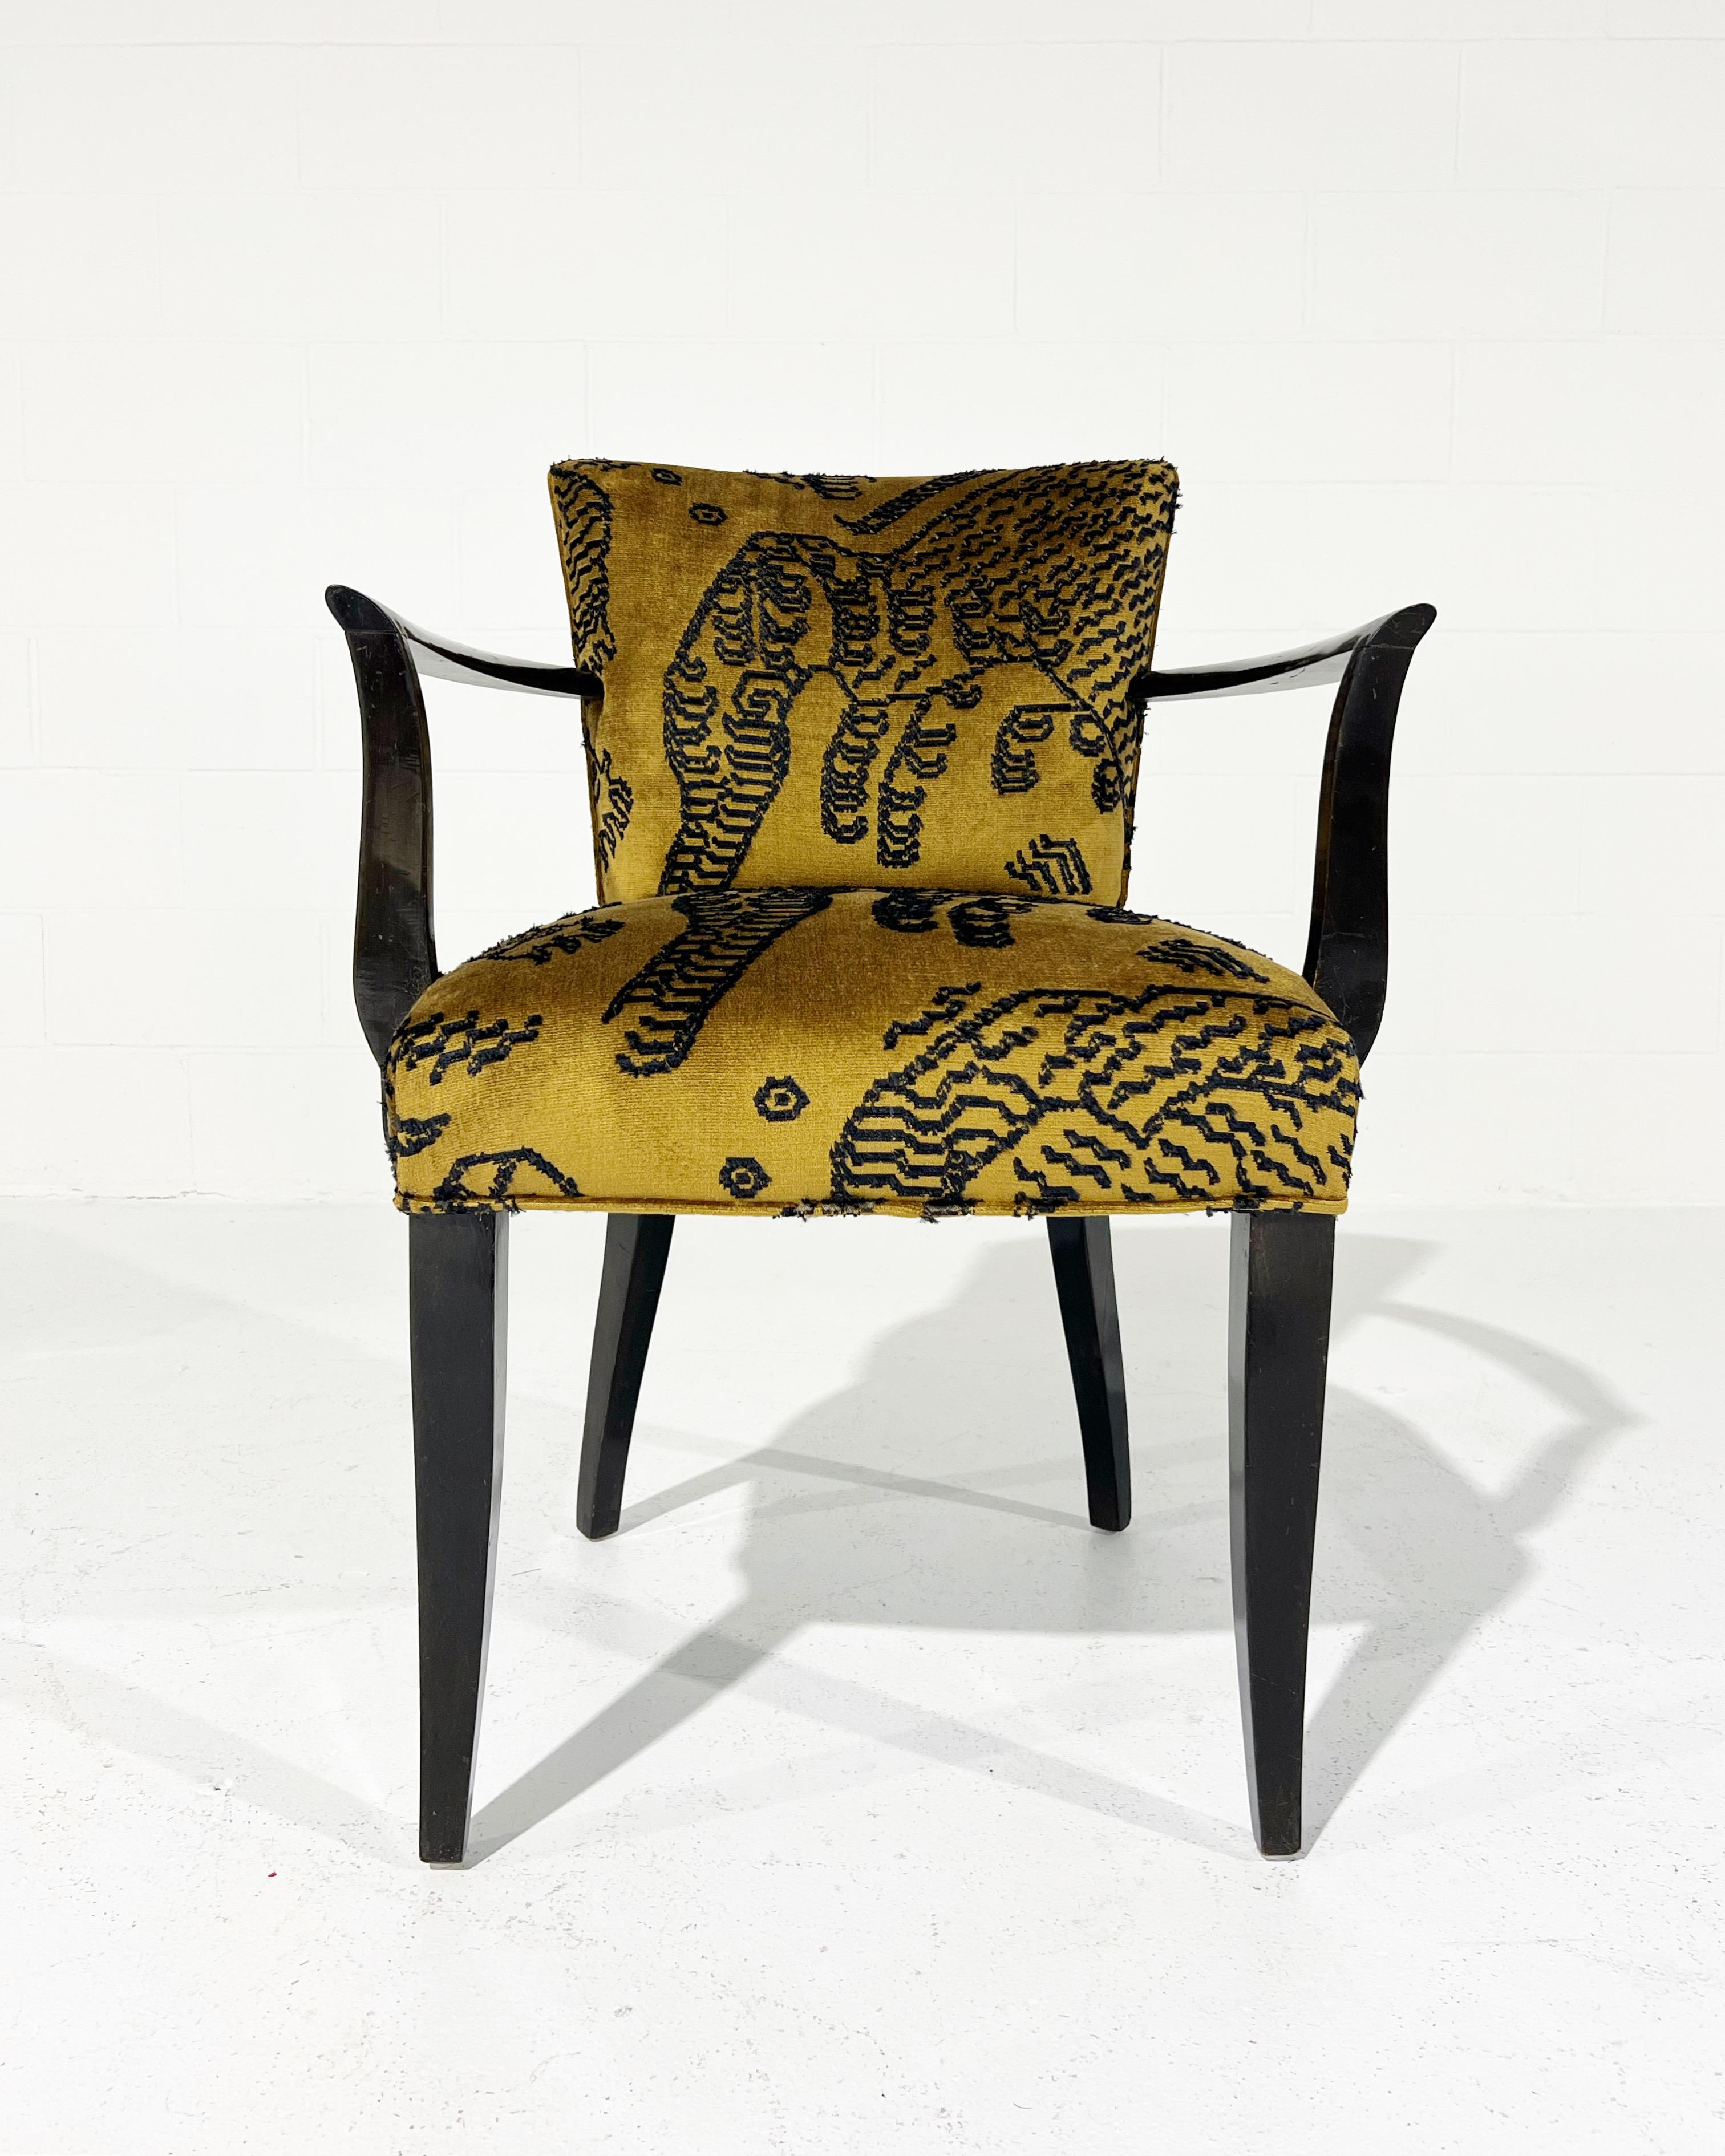 Eugène Printz était un designer français surtout connu pour ses meubles d'assise en bois révolutionnaires. L'œuvre de Printz est particulièrement remarquable pour son amalgame de bois précieux avec une esthétique modulaire et progressiste qui était